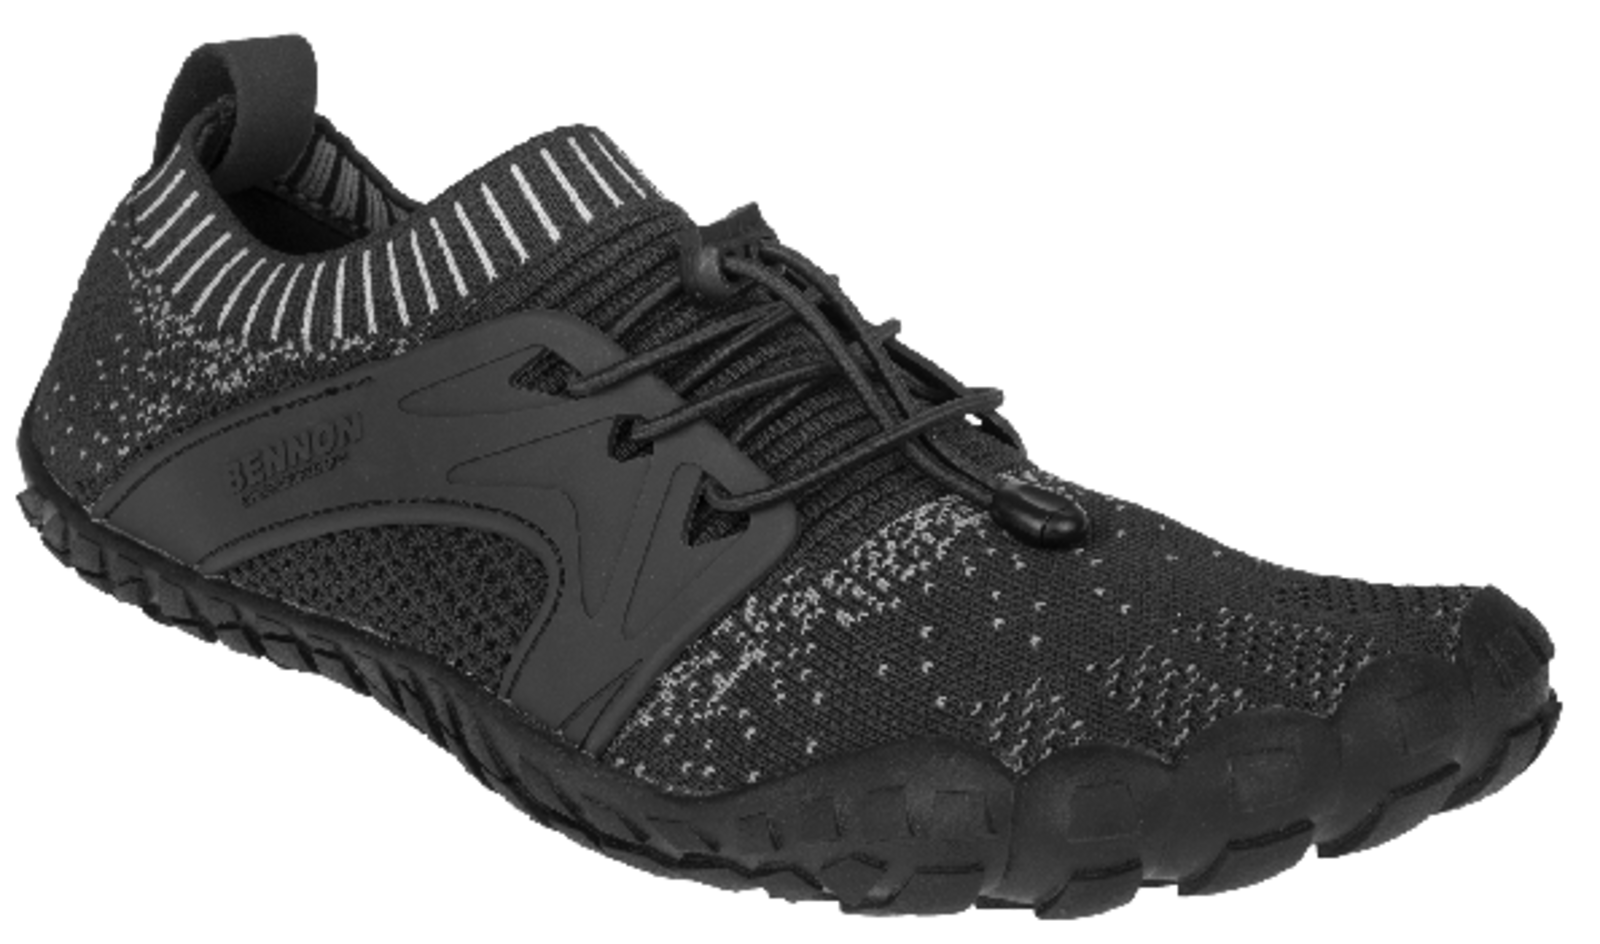 Voľnočasová barefoot obuv Bennon Bosky - veľkosť: 37, farba: čierna/biela